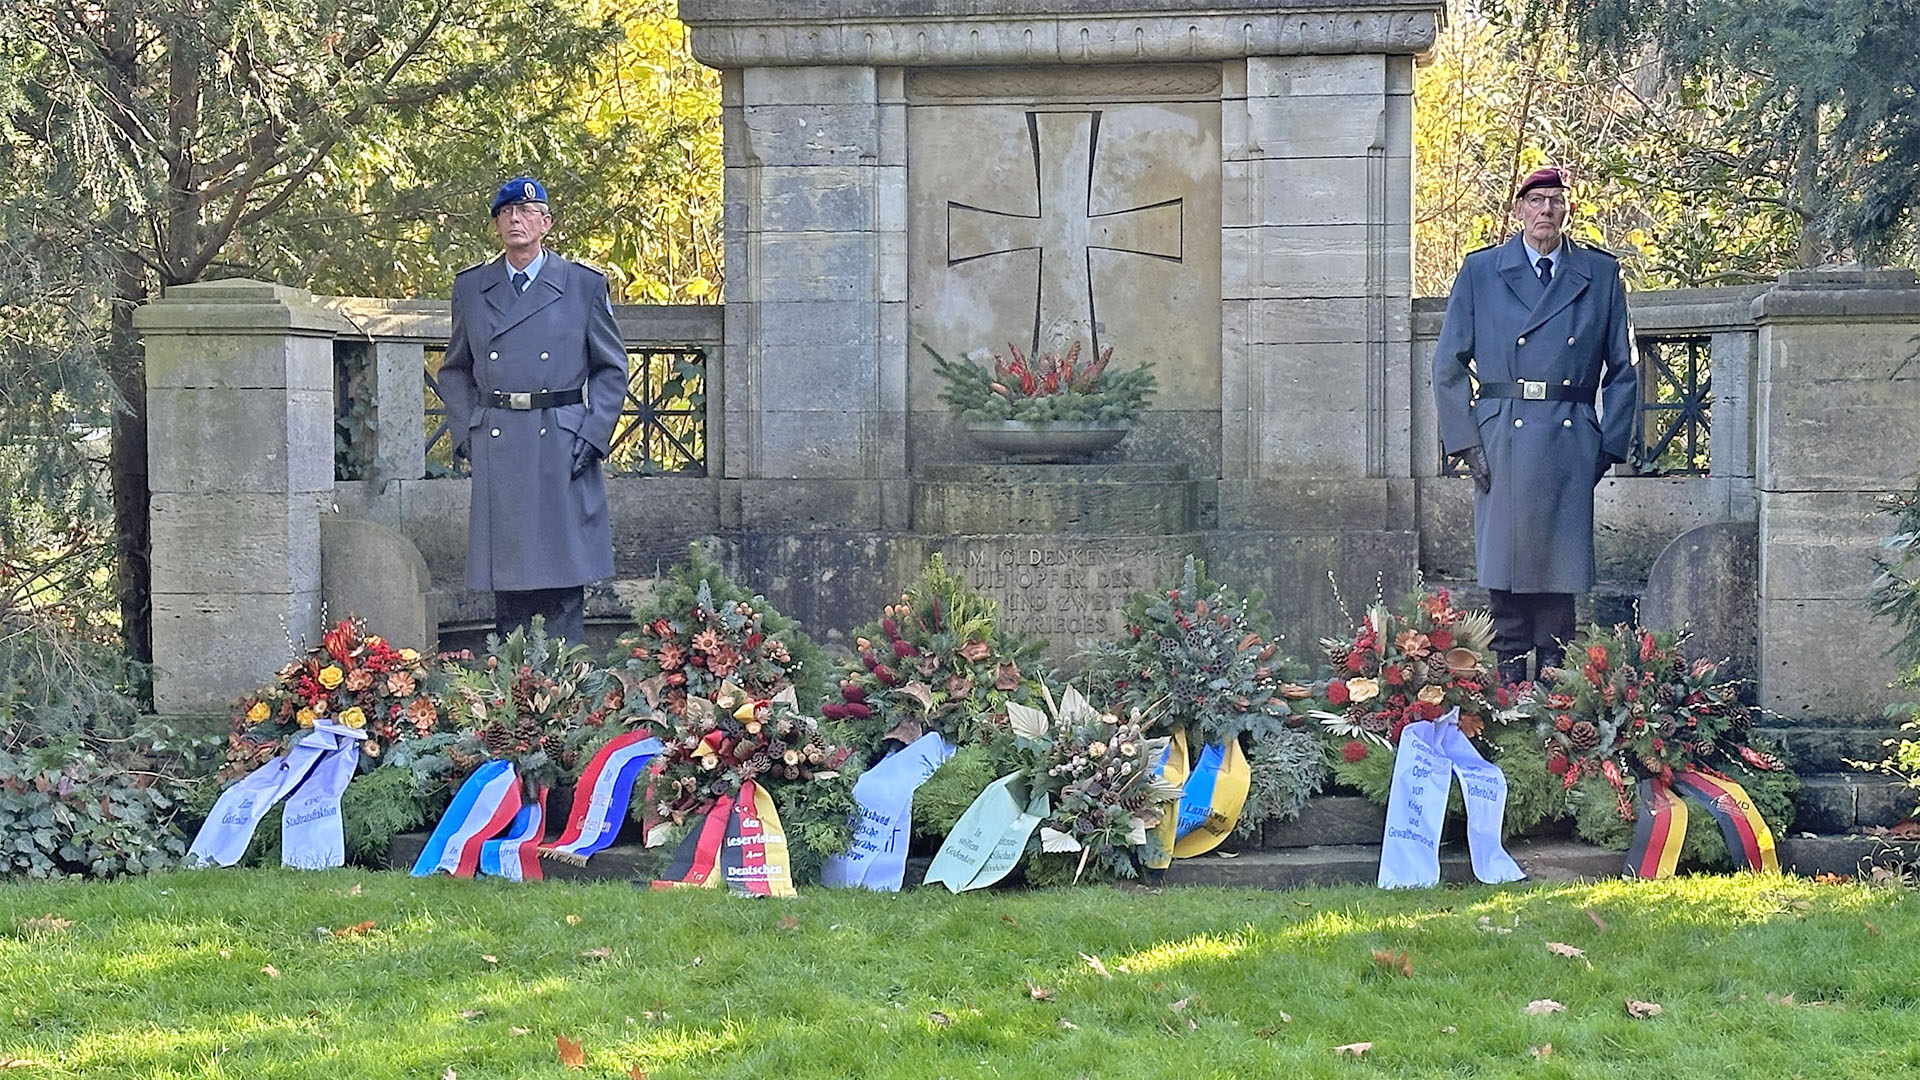 An einem Gedenk- oder Ehrenmal wurden Kränze neidergelegt, rechts und links neben dem Stein stehen jeweils ein Soldat in Uniform